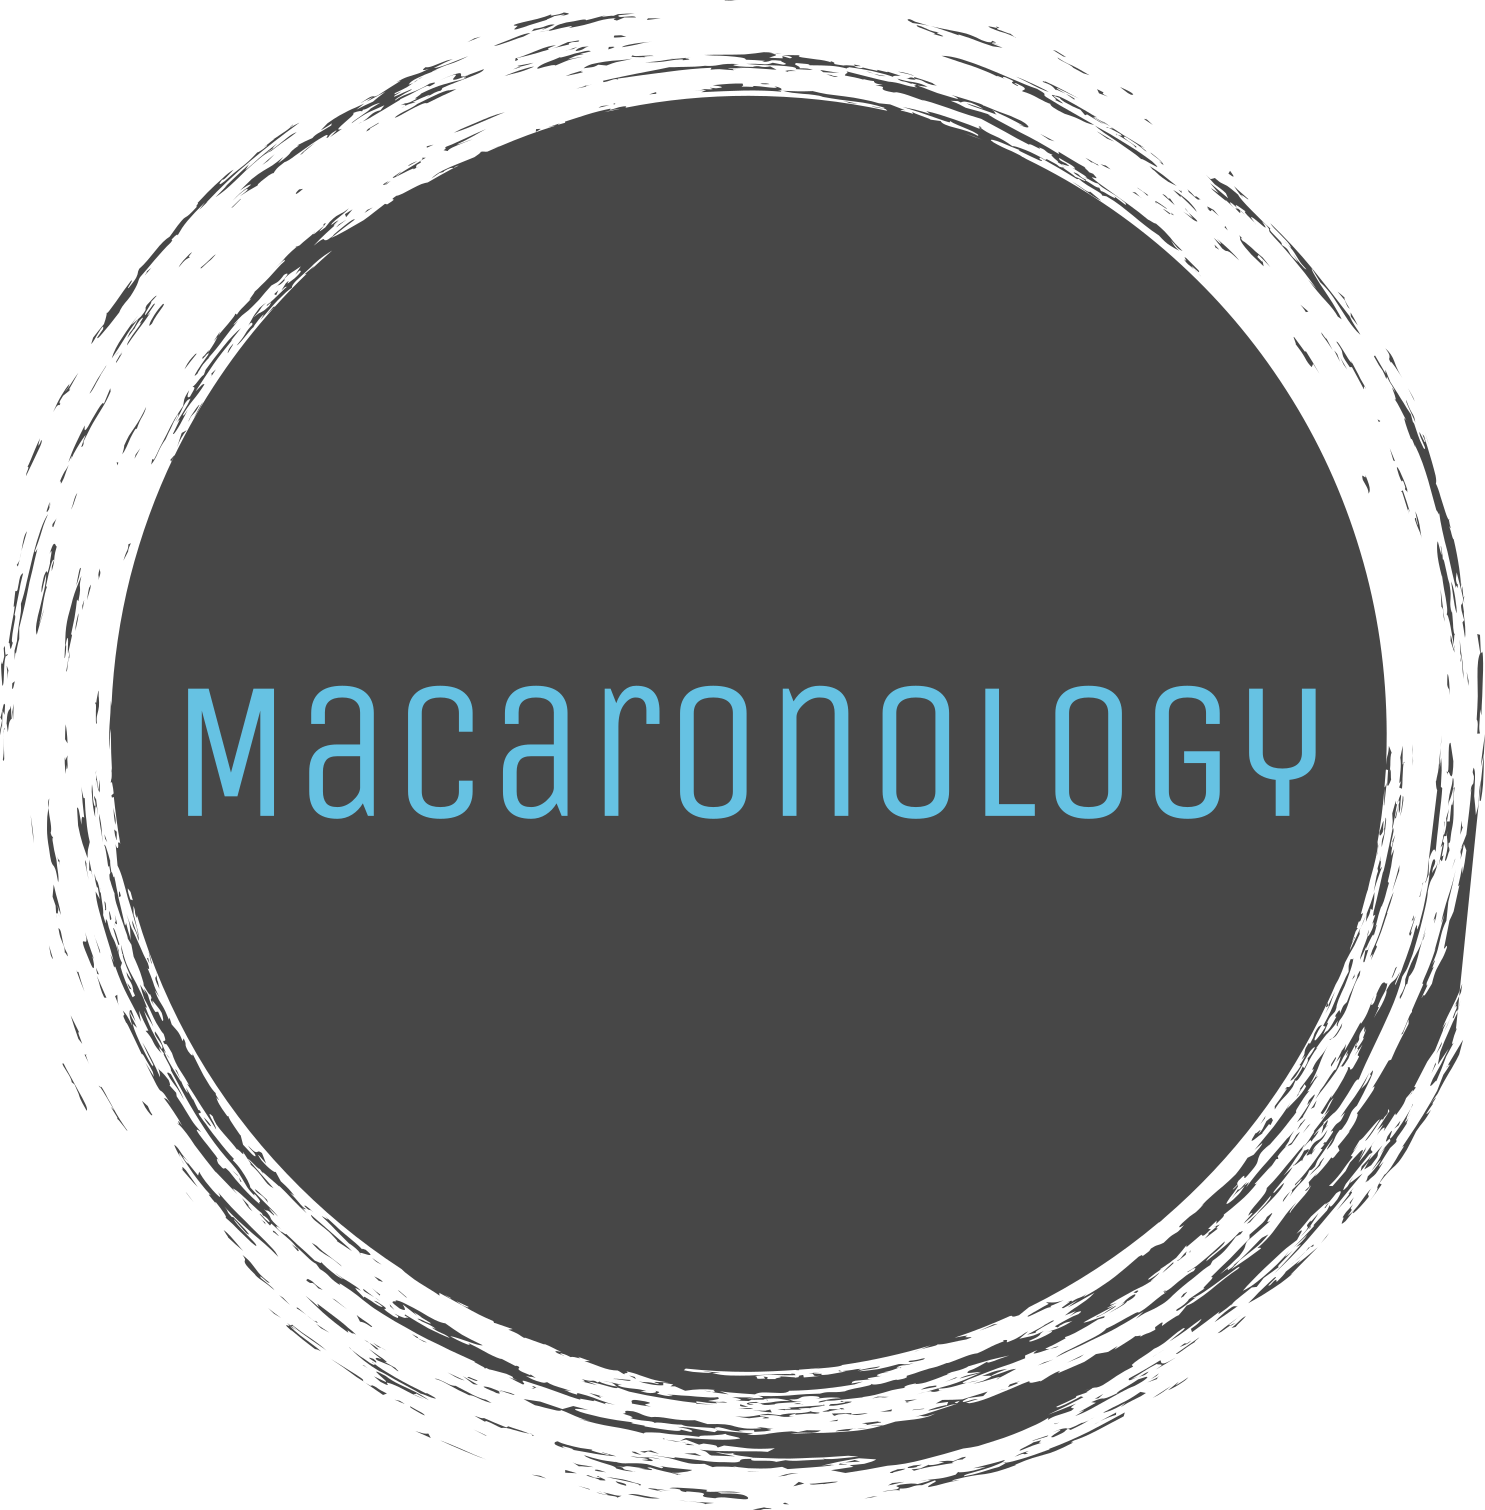 Macaronology